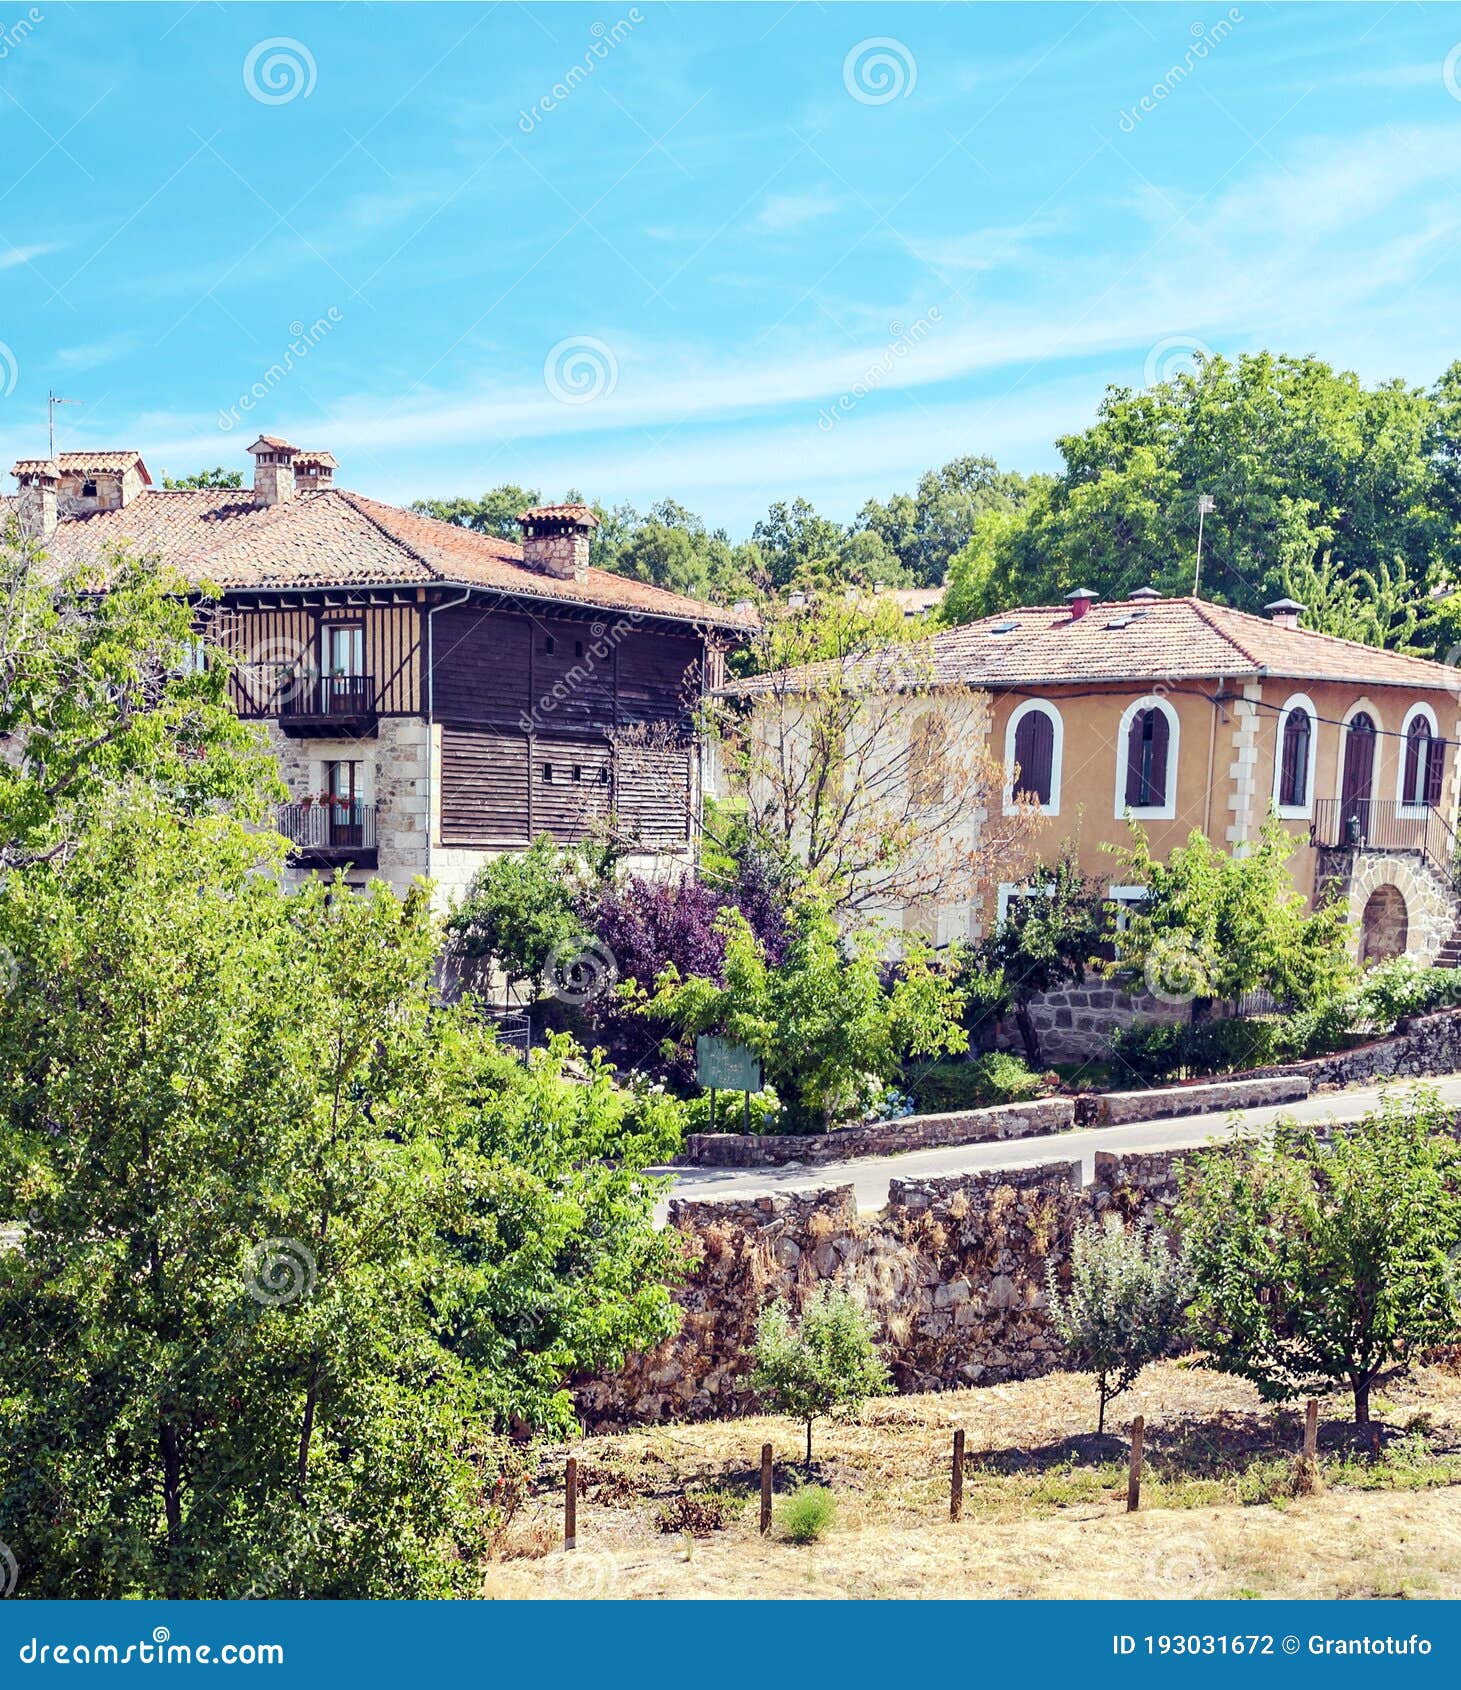 village of la alberca